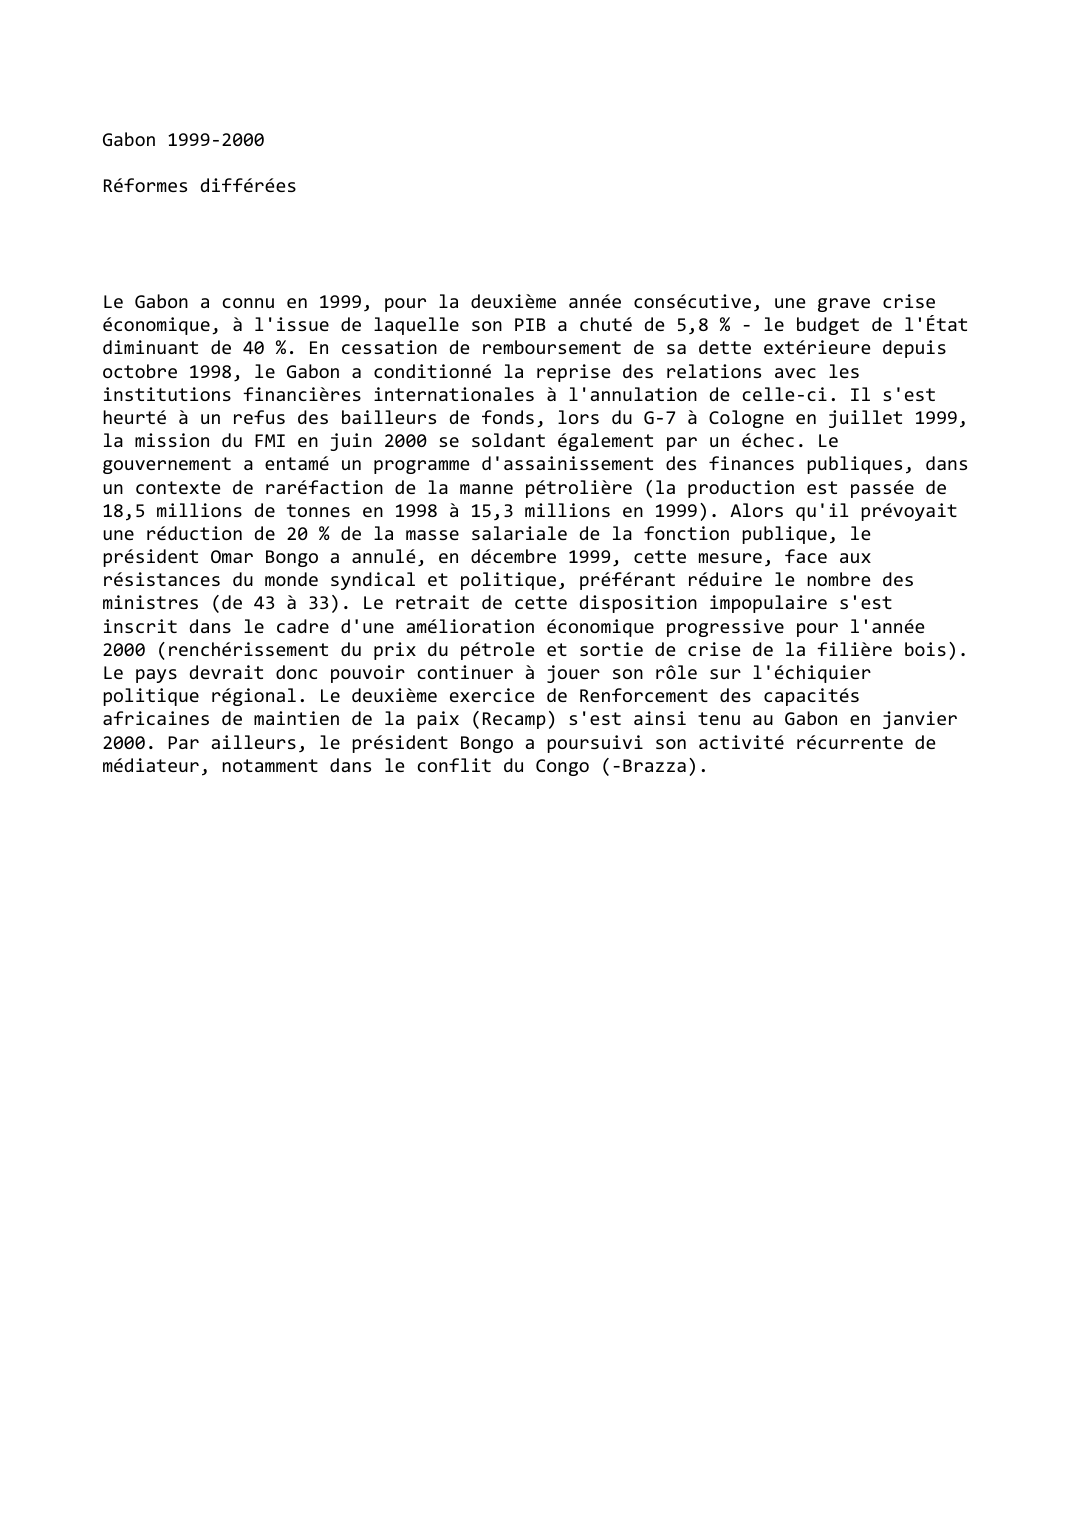 Prévisualisation du document Gabon (1999-2000): Réformes différées